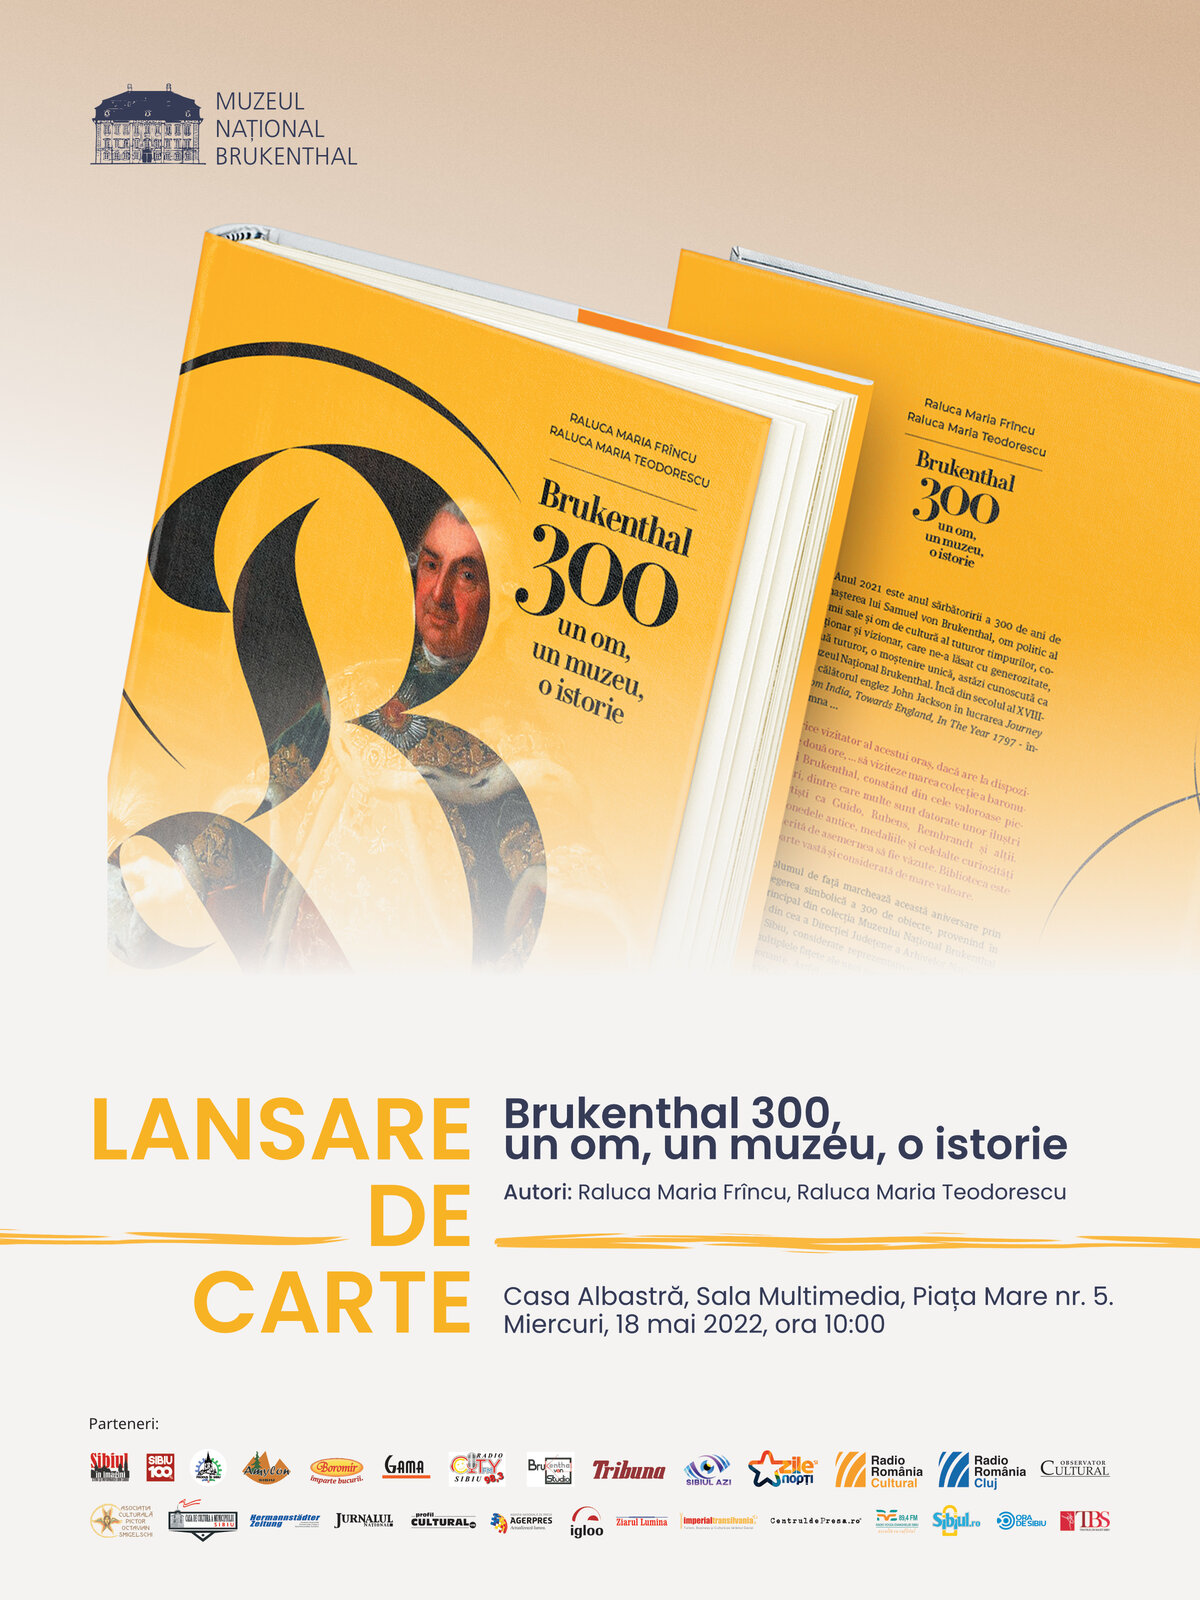 Brukenthal 300